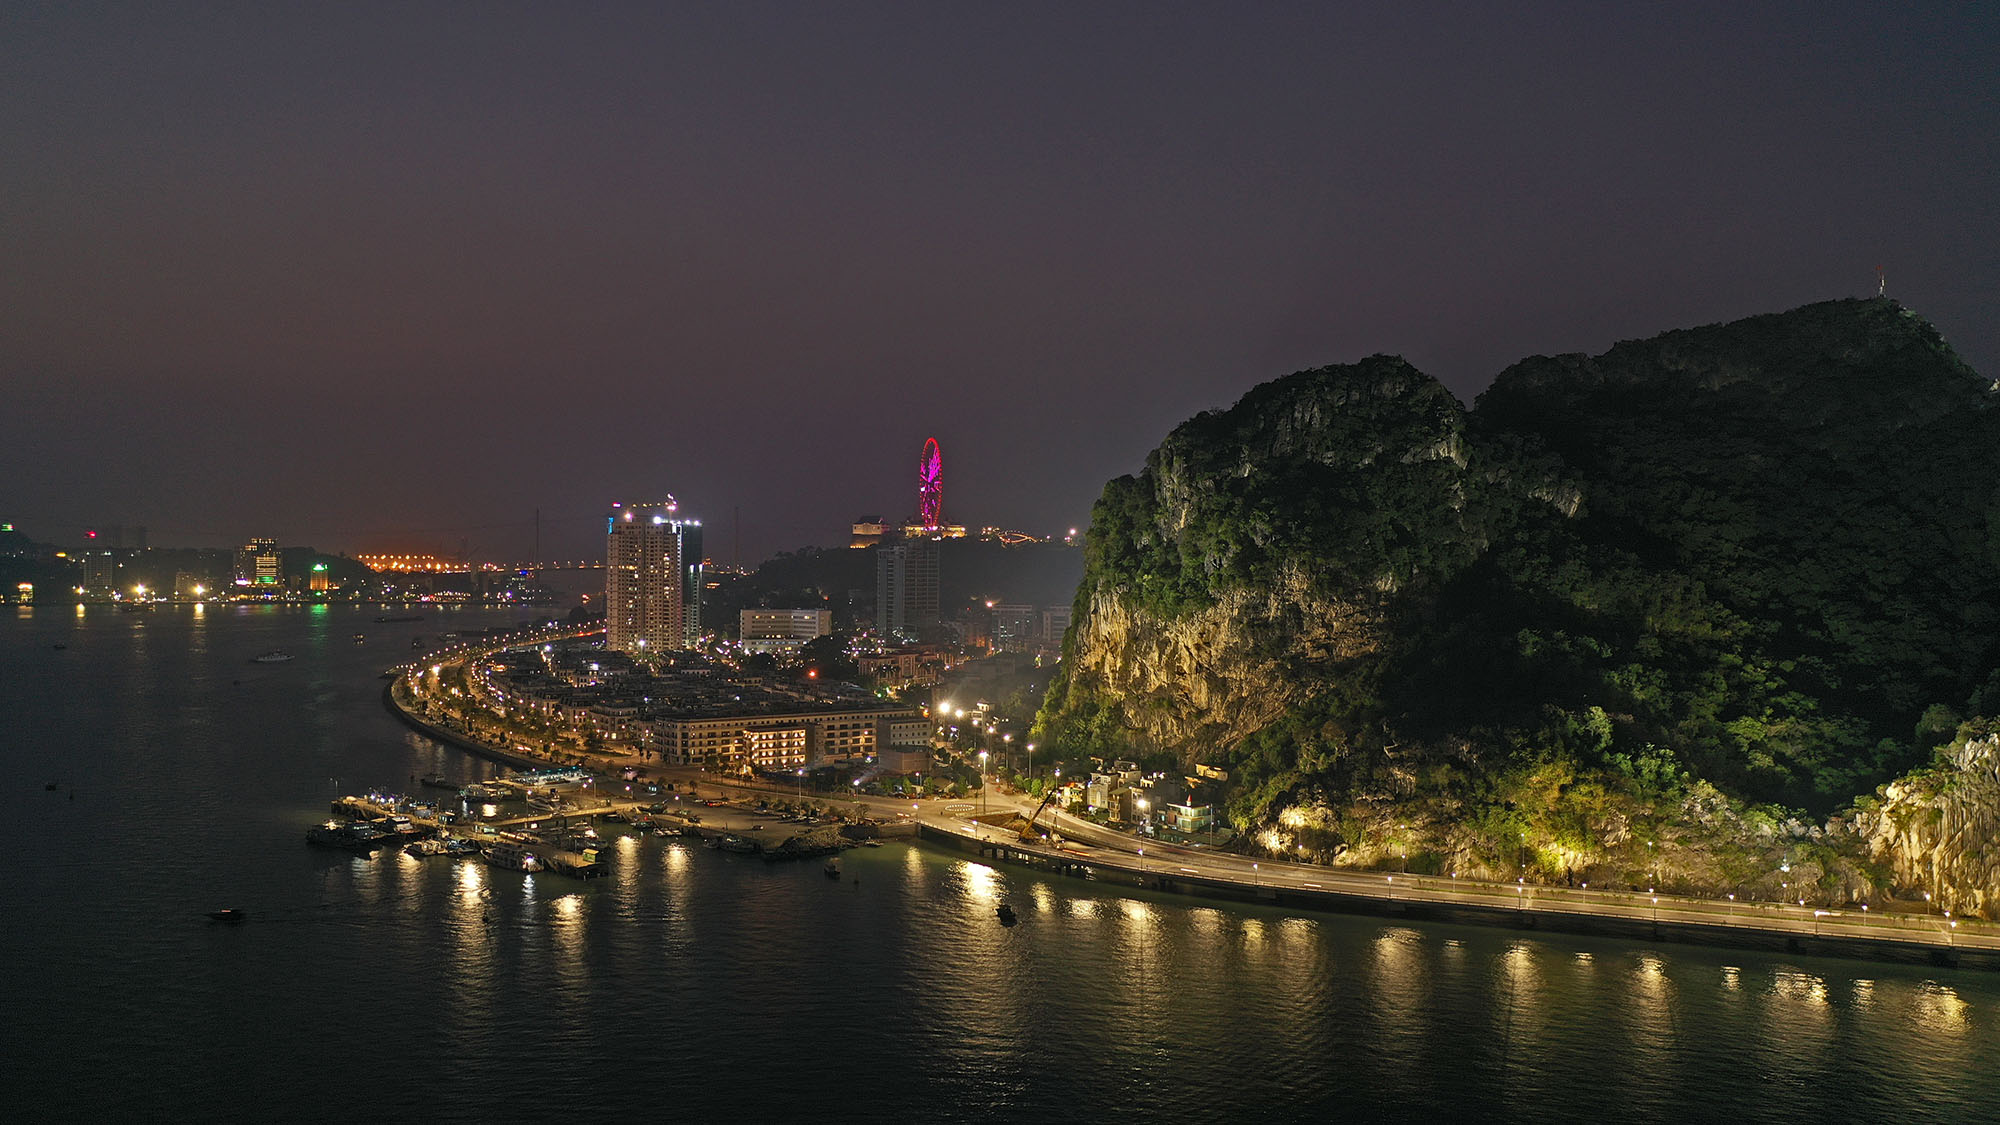 Với mục đích tô điểm lên vẻ đẹp của ngọn núi vào ban đêm, UBND Thành phố Hạ Long vừa đầu tư và đưa vào thử nghiệm hệ thống chiếu sáng cảnh quan núi Bài Thơ.